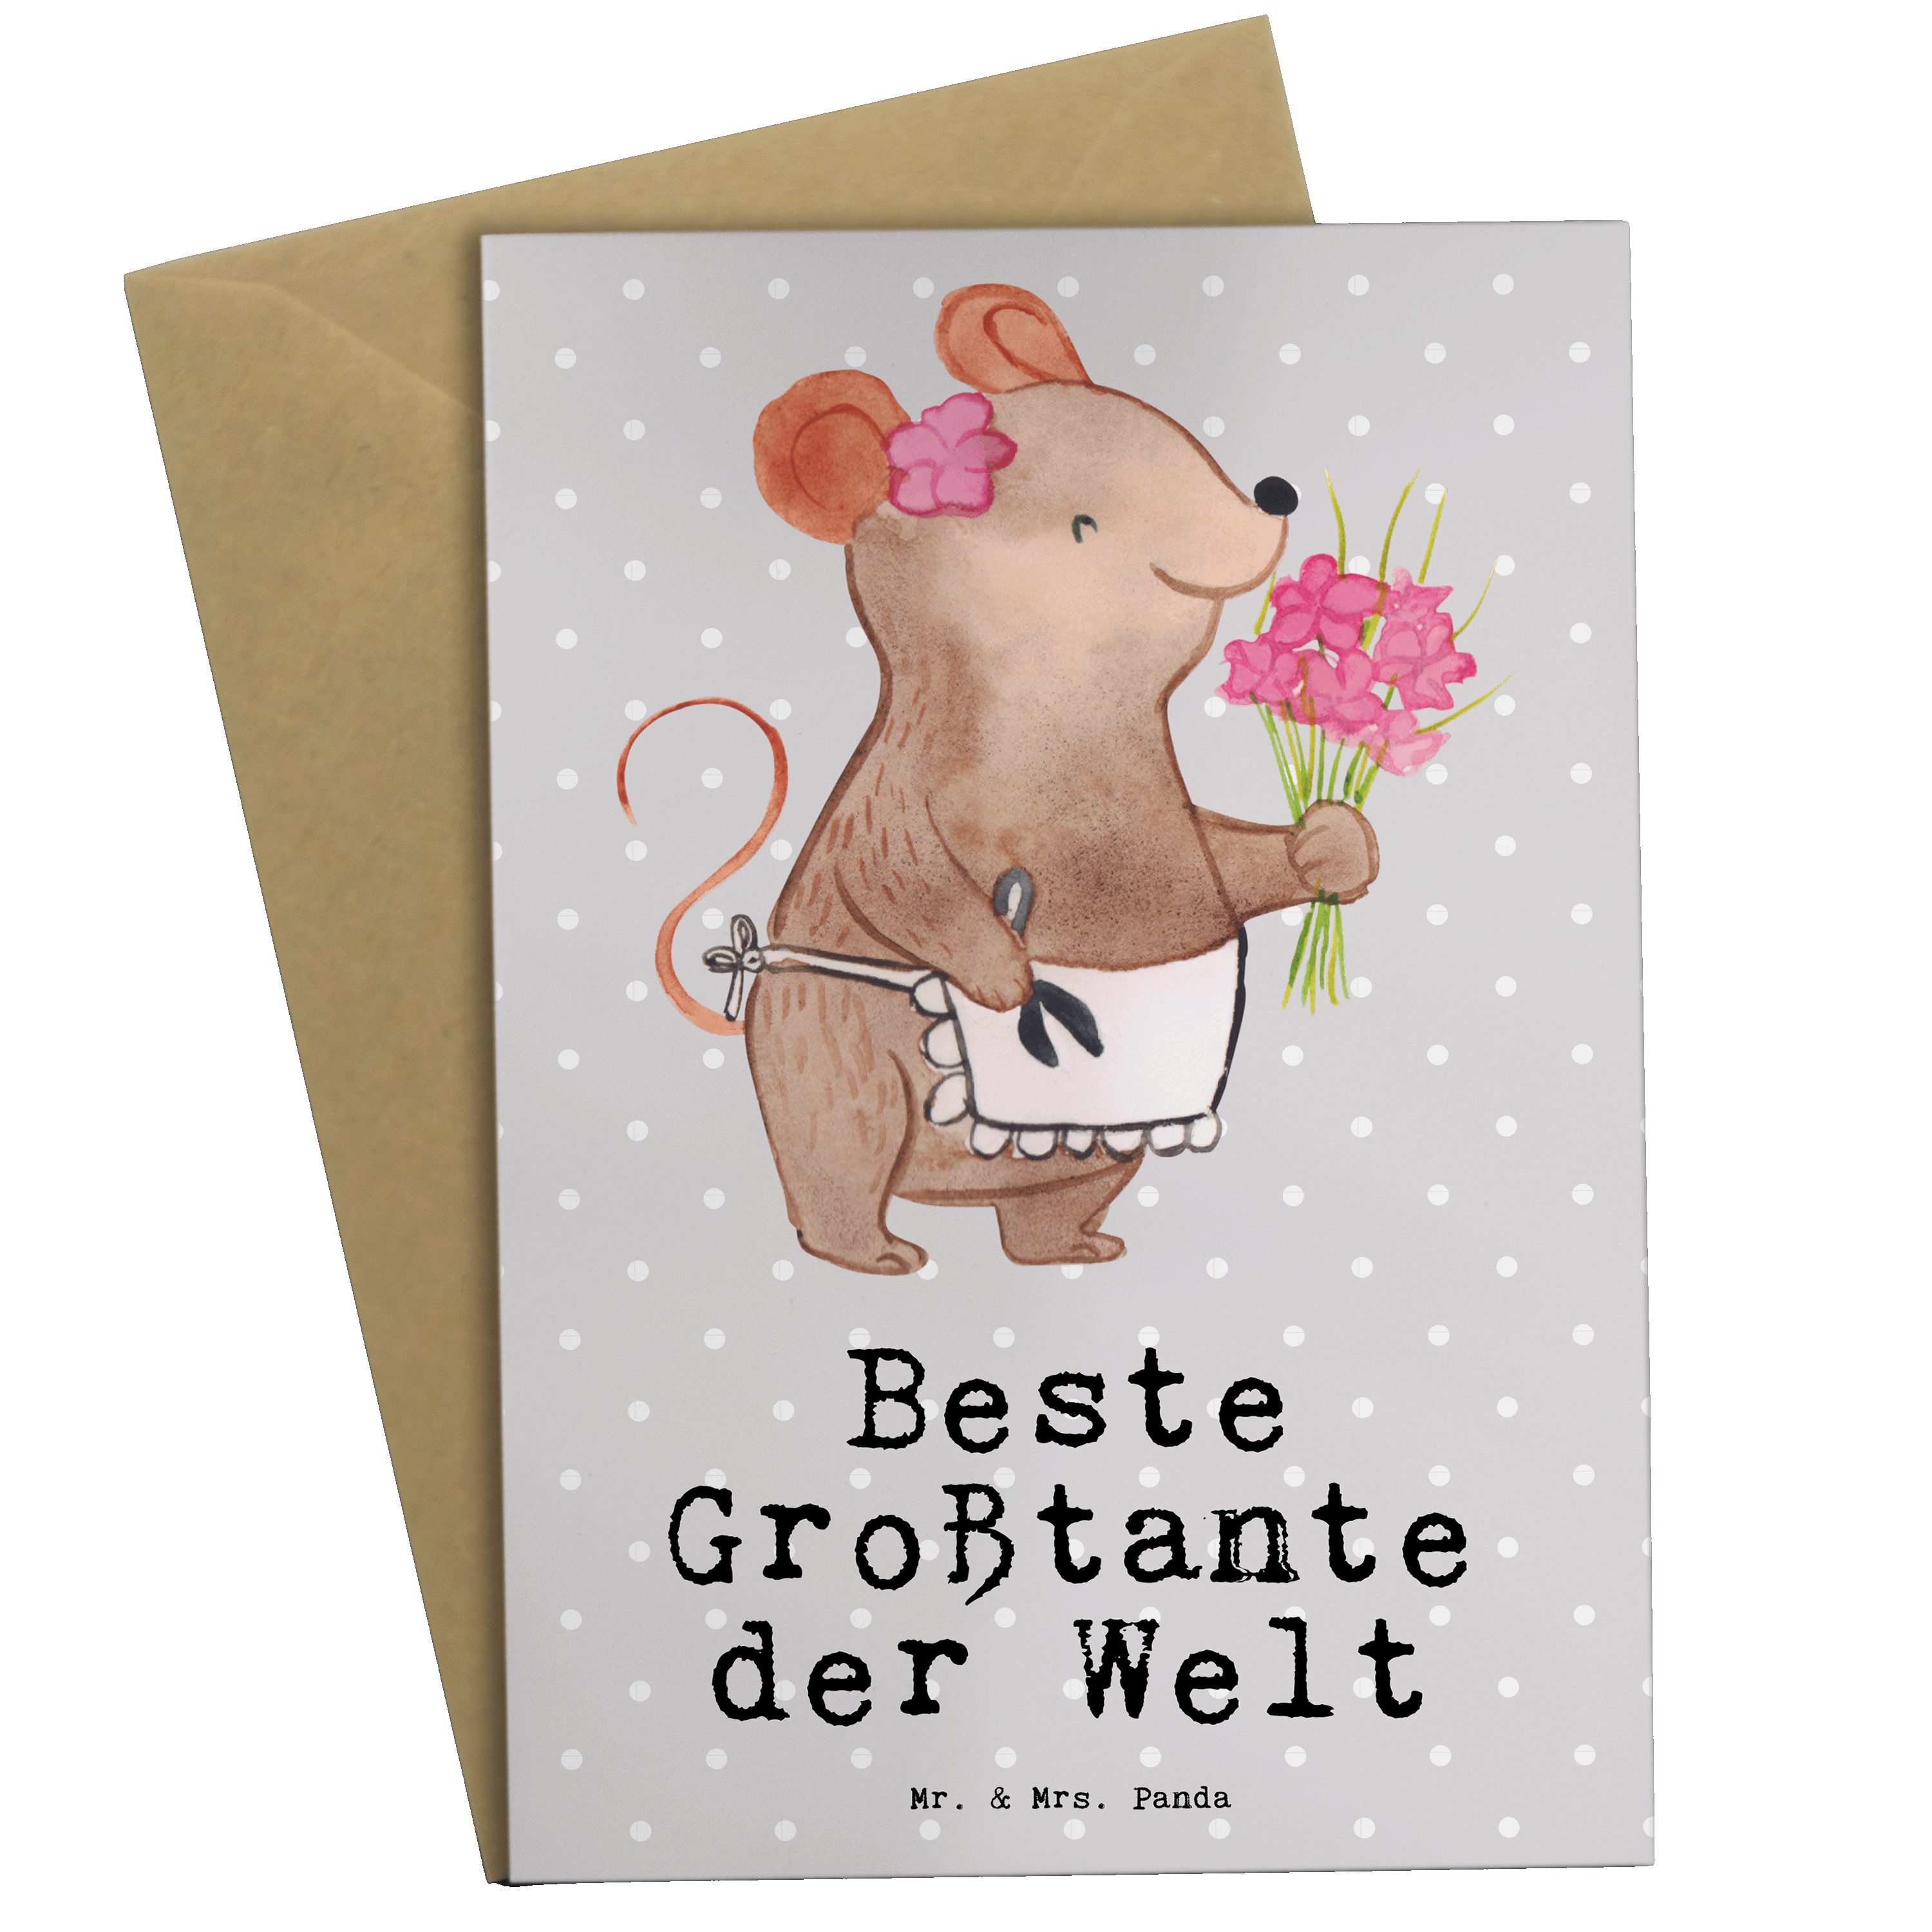 Mr. & Mrs. Panda Grußkarte Maus Beste Großtante der Welt - Grau Pastell - Geschenk, Dankeschön